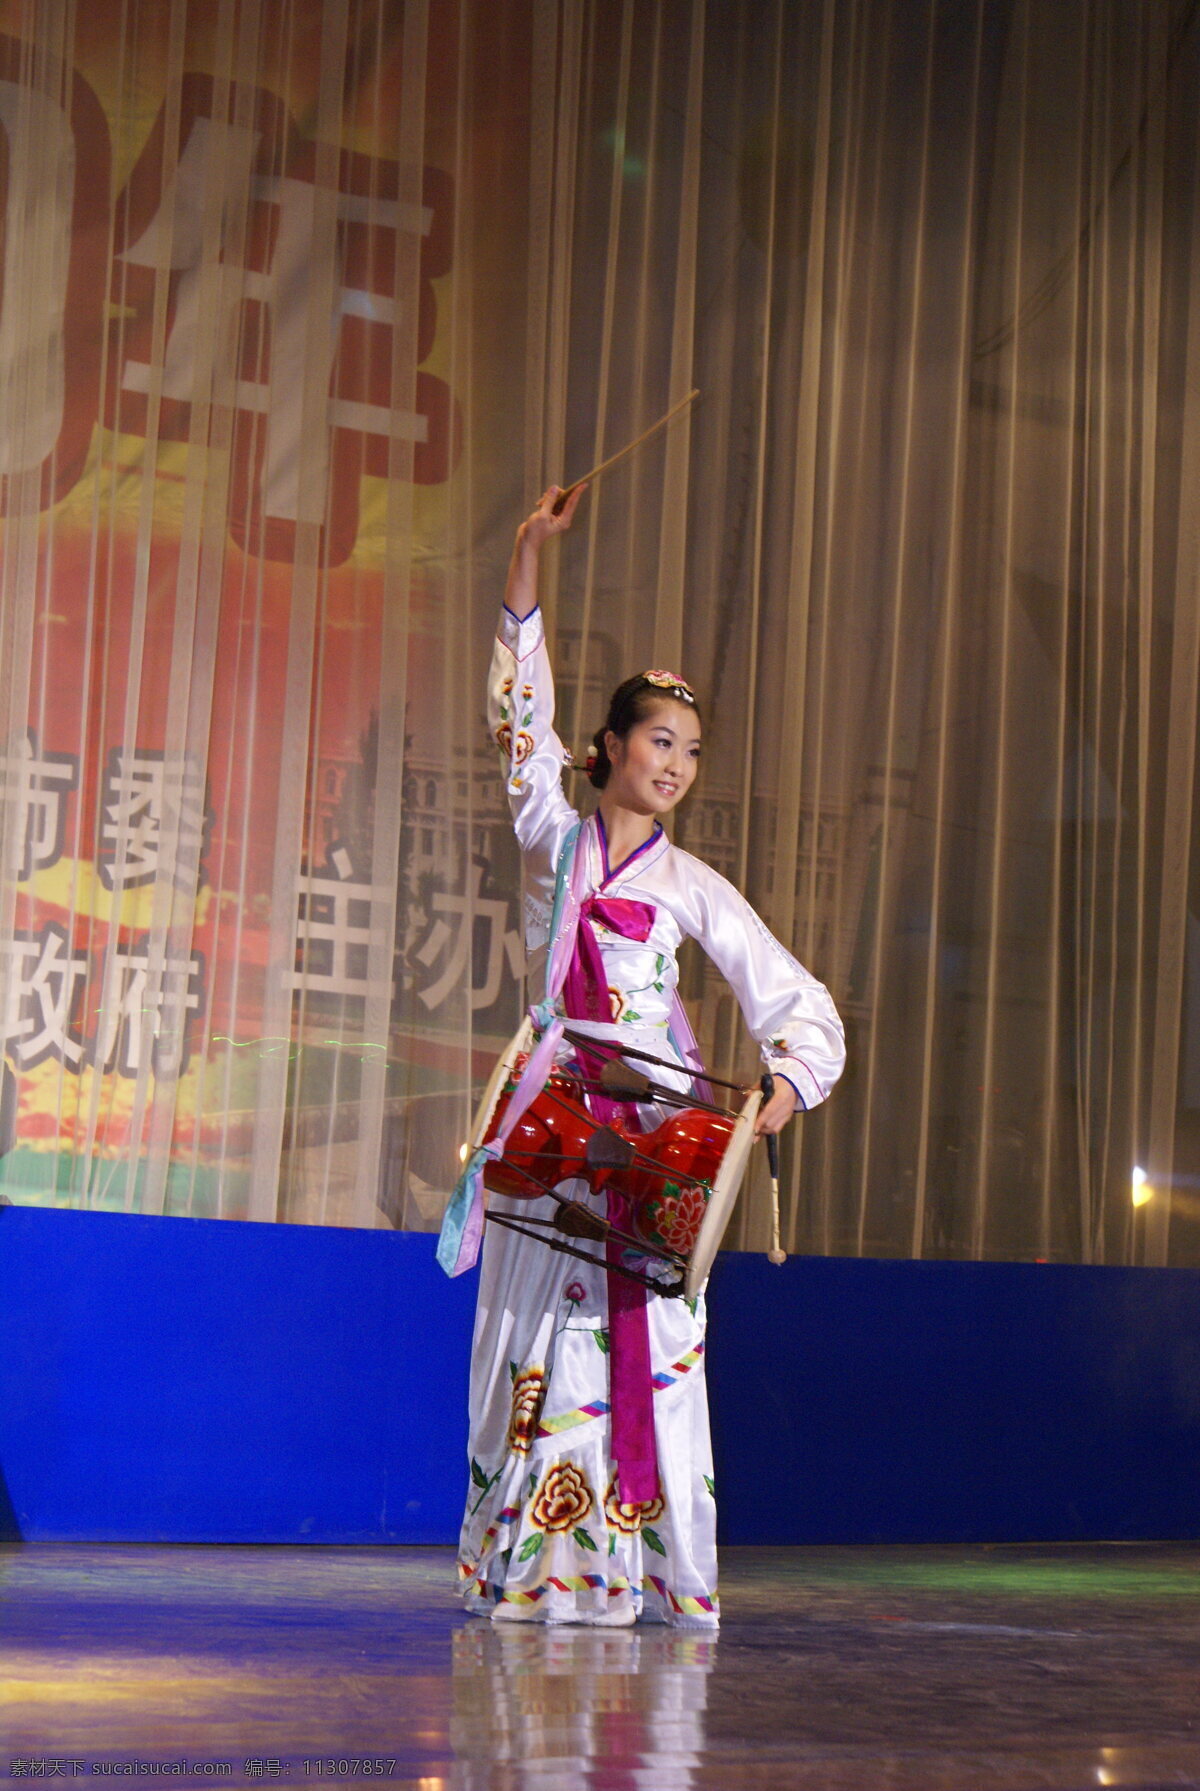 朝鲜族 传统 长鼓舞 文化艺术 舞蹈 舞蹈音乐 朝鲜族歌舞 psd源文件